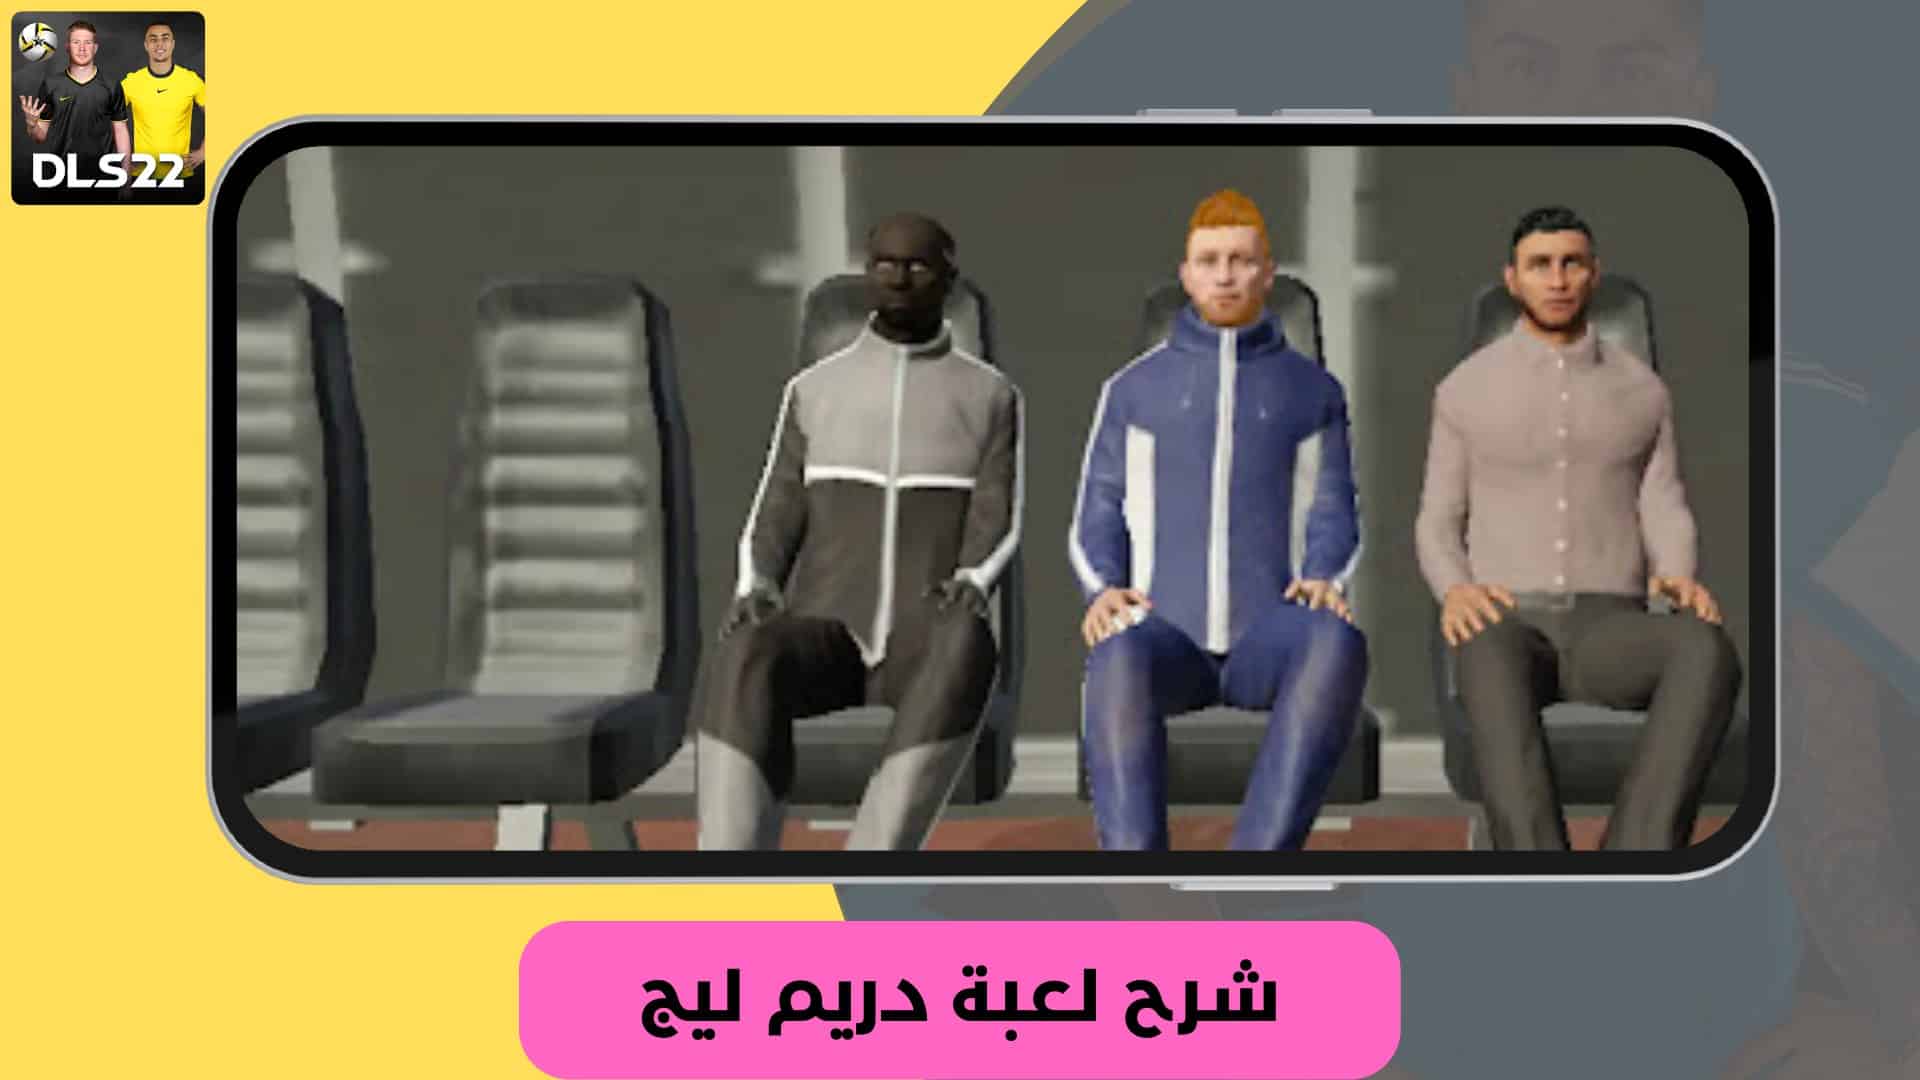 تنزيل لعبة دريم ليج مود الاهلي 2022 تعليق عربي بدون انترنت